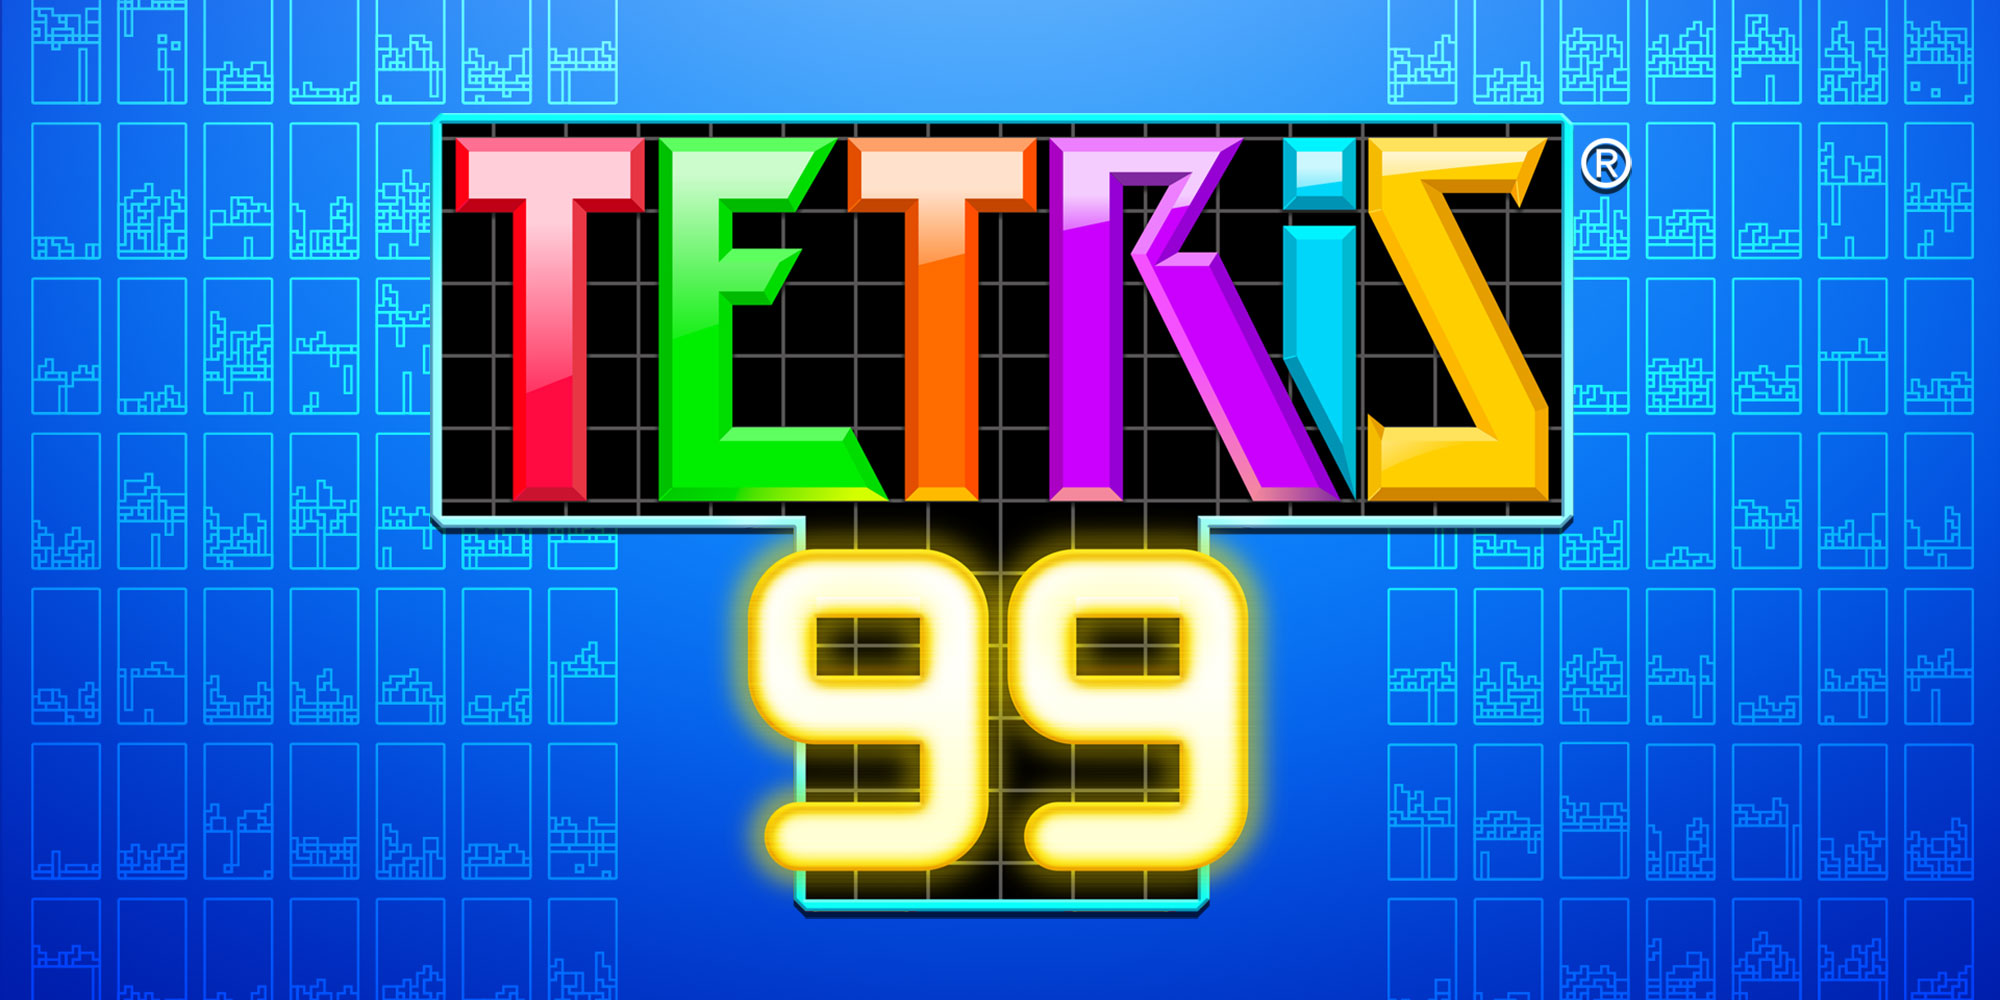 Migliori giochi gratis - Tetris 99